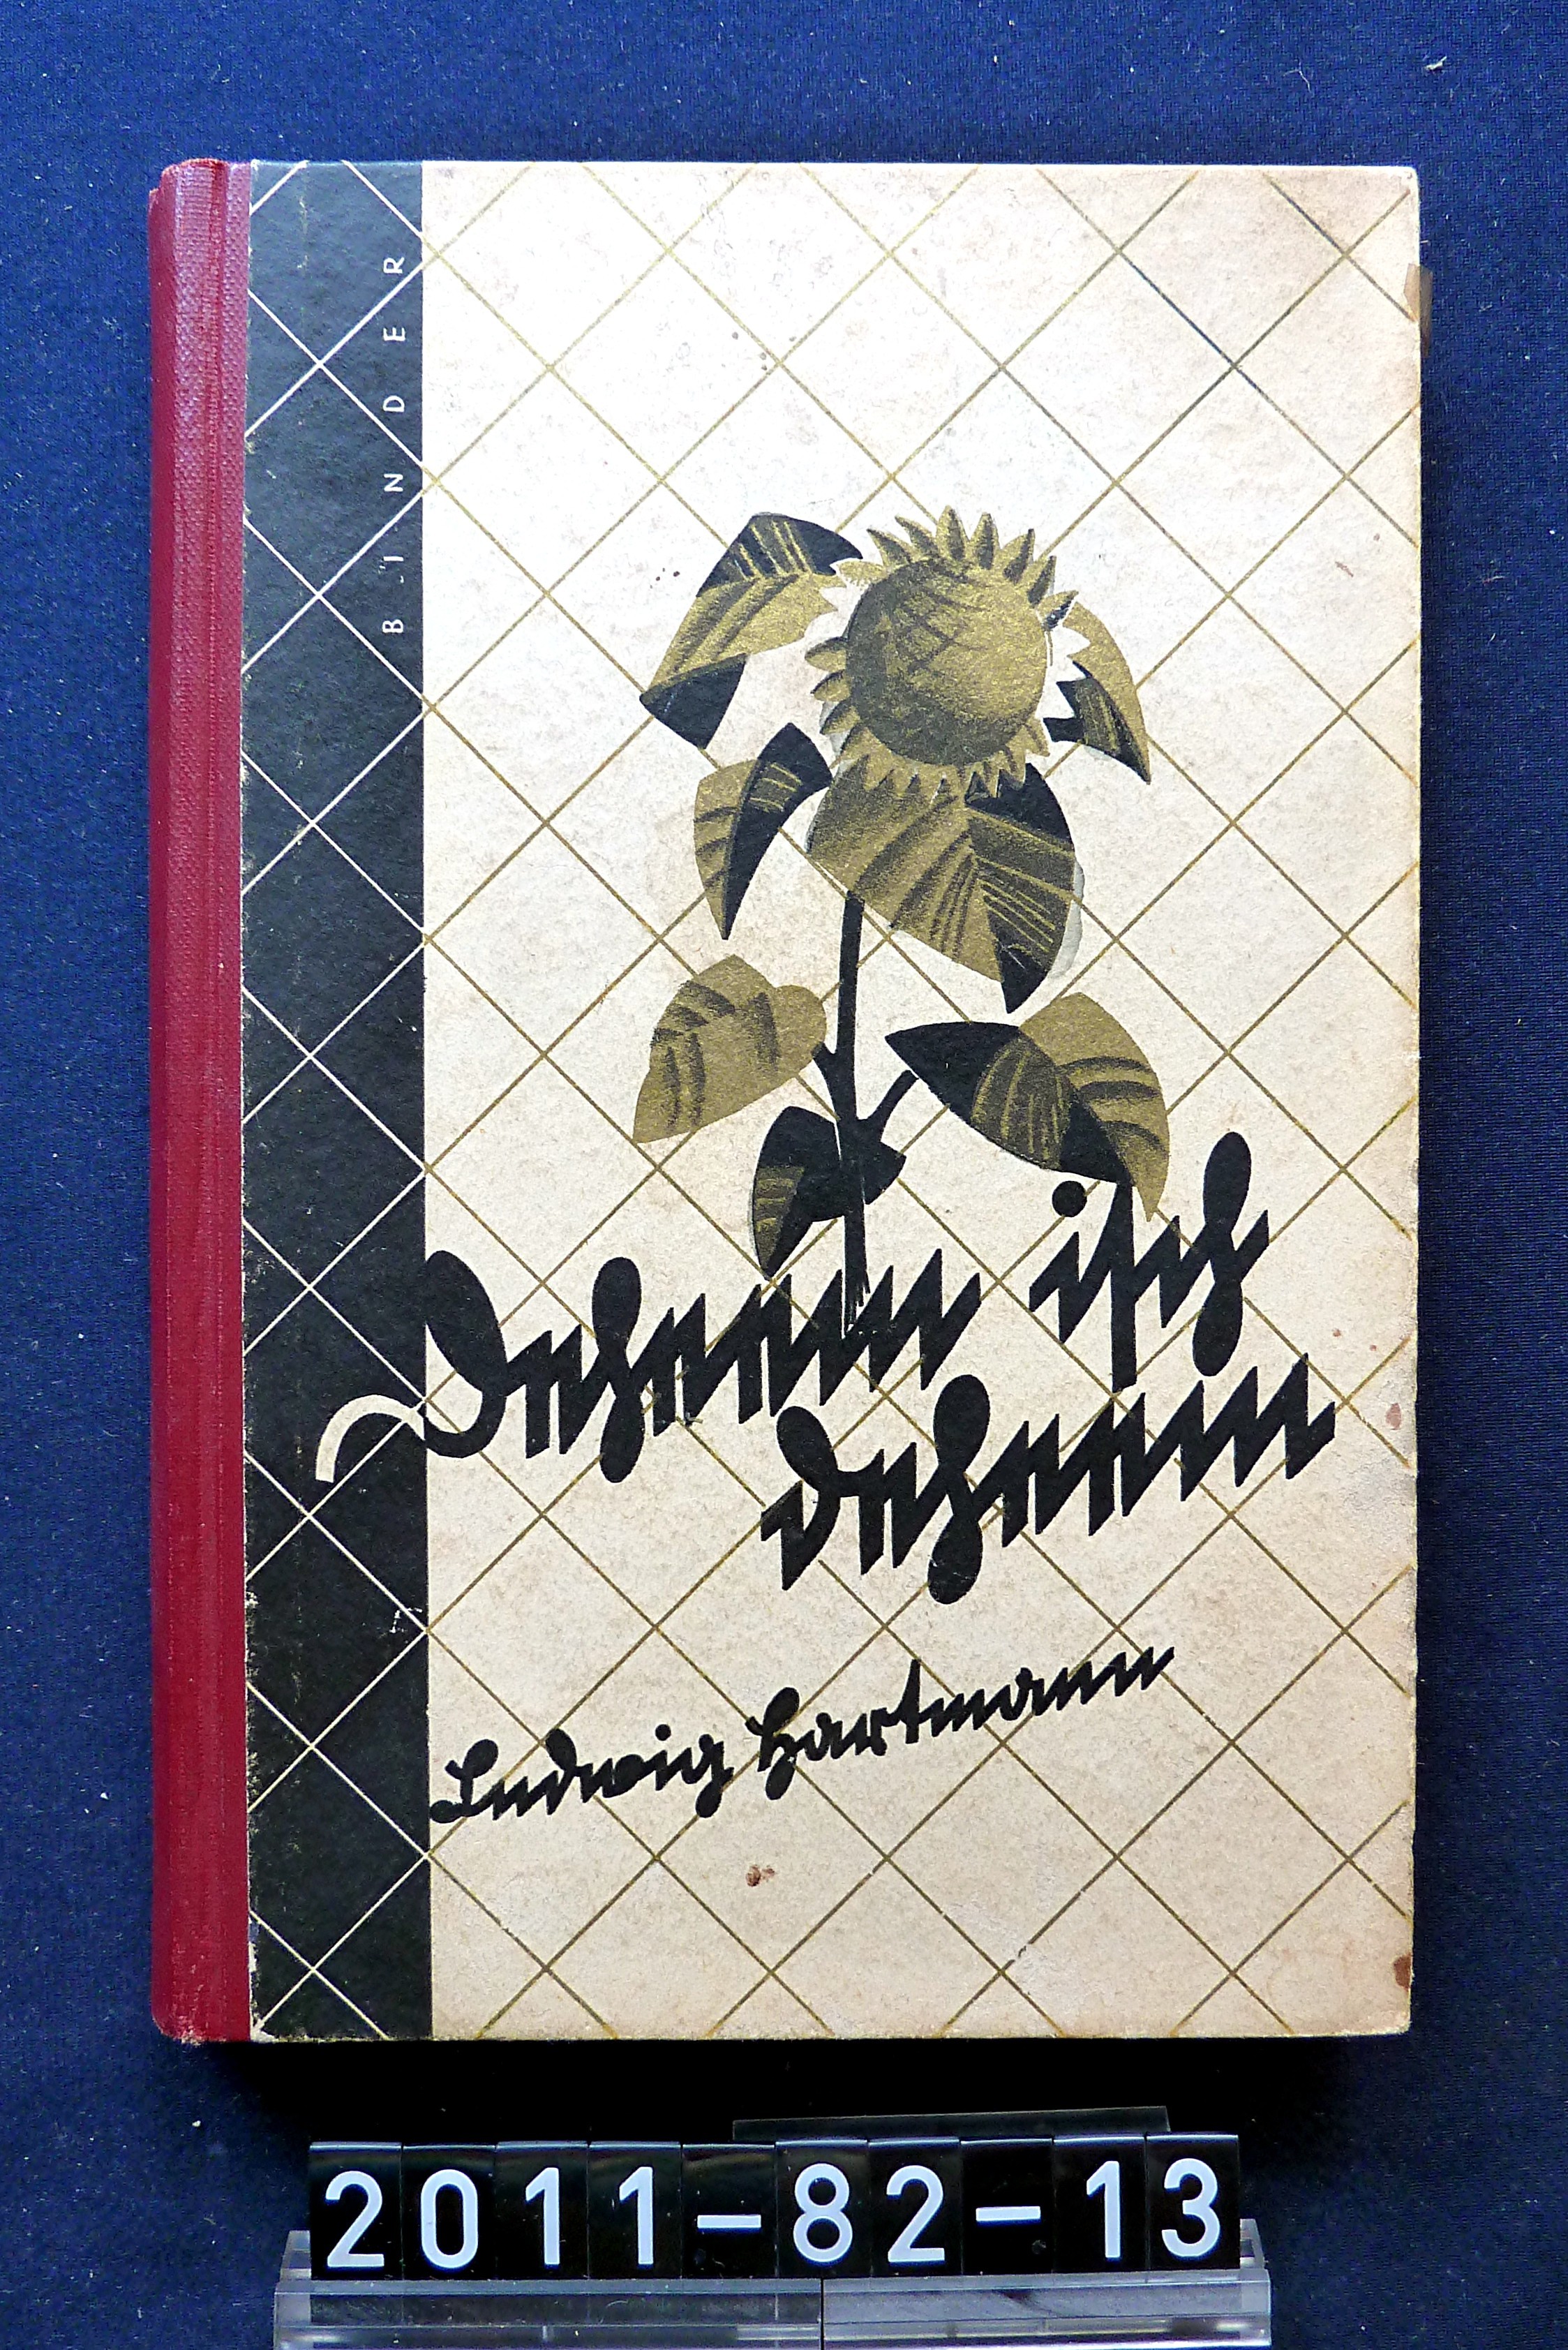 Buch; "Deheem isch deheem"; Ludwig Hartmann, 1928 (Stadtmuseum Bad Dürkheim, Museumsgesellschaft Bad Dürkheim e.V. CC BY-NC-SA)